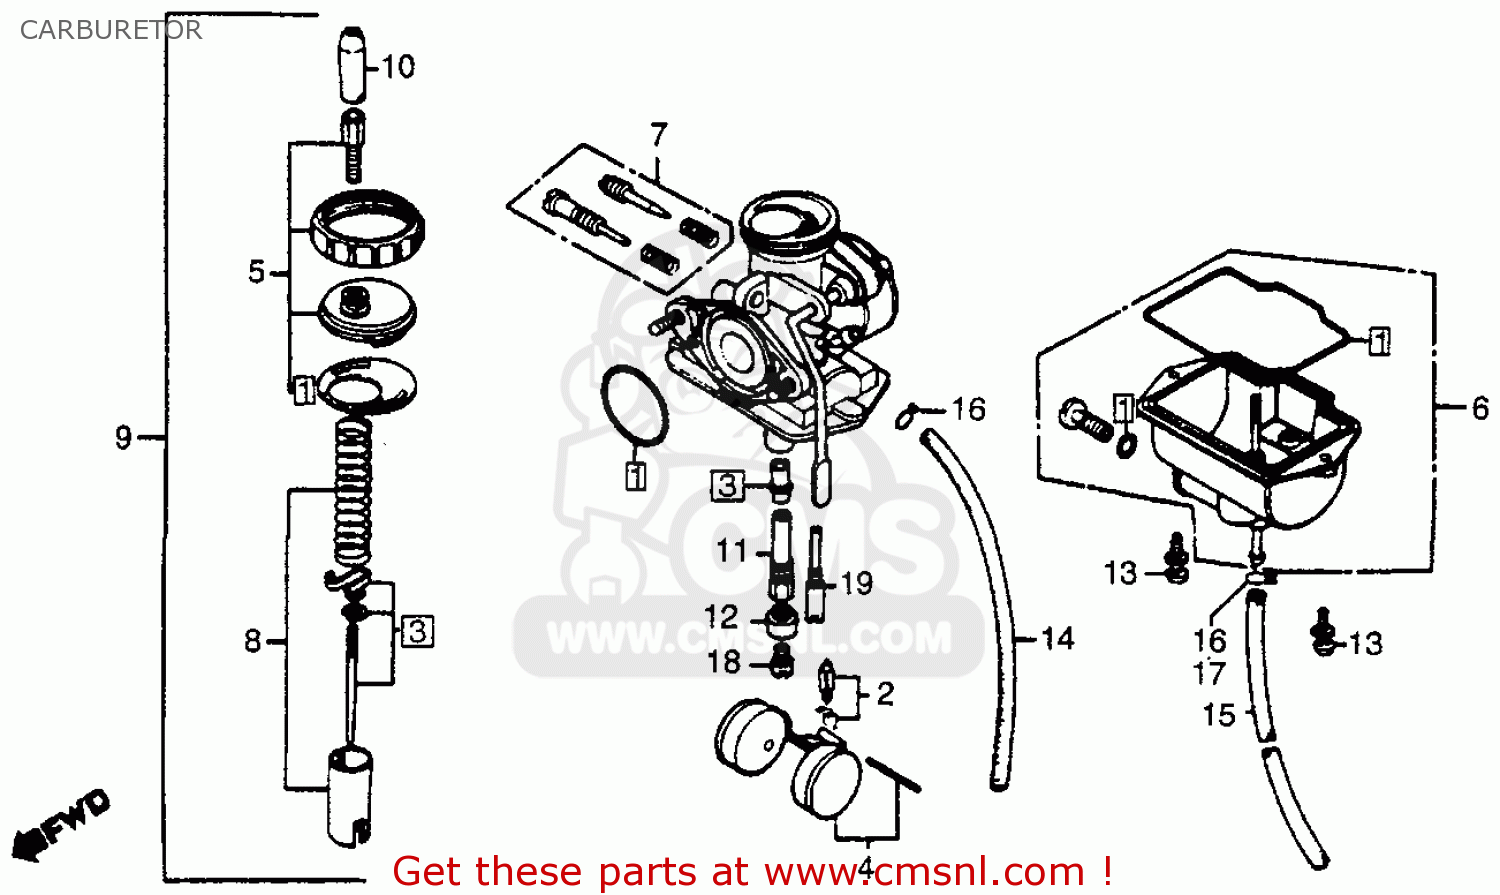 2003 Honda xr80 carburetor diagram